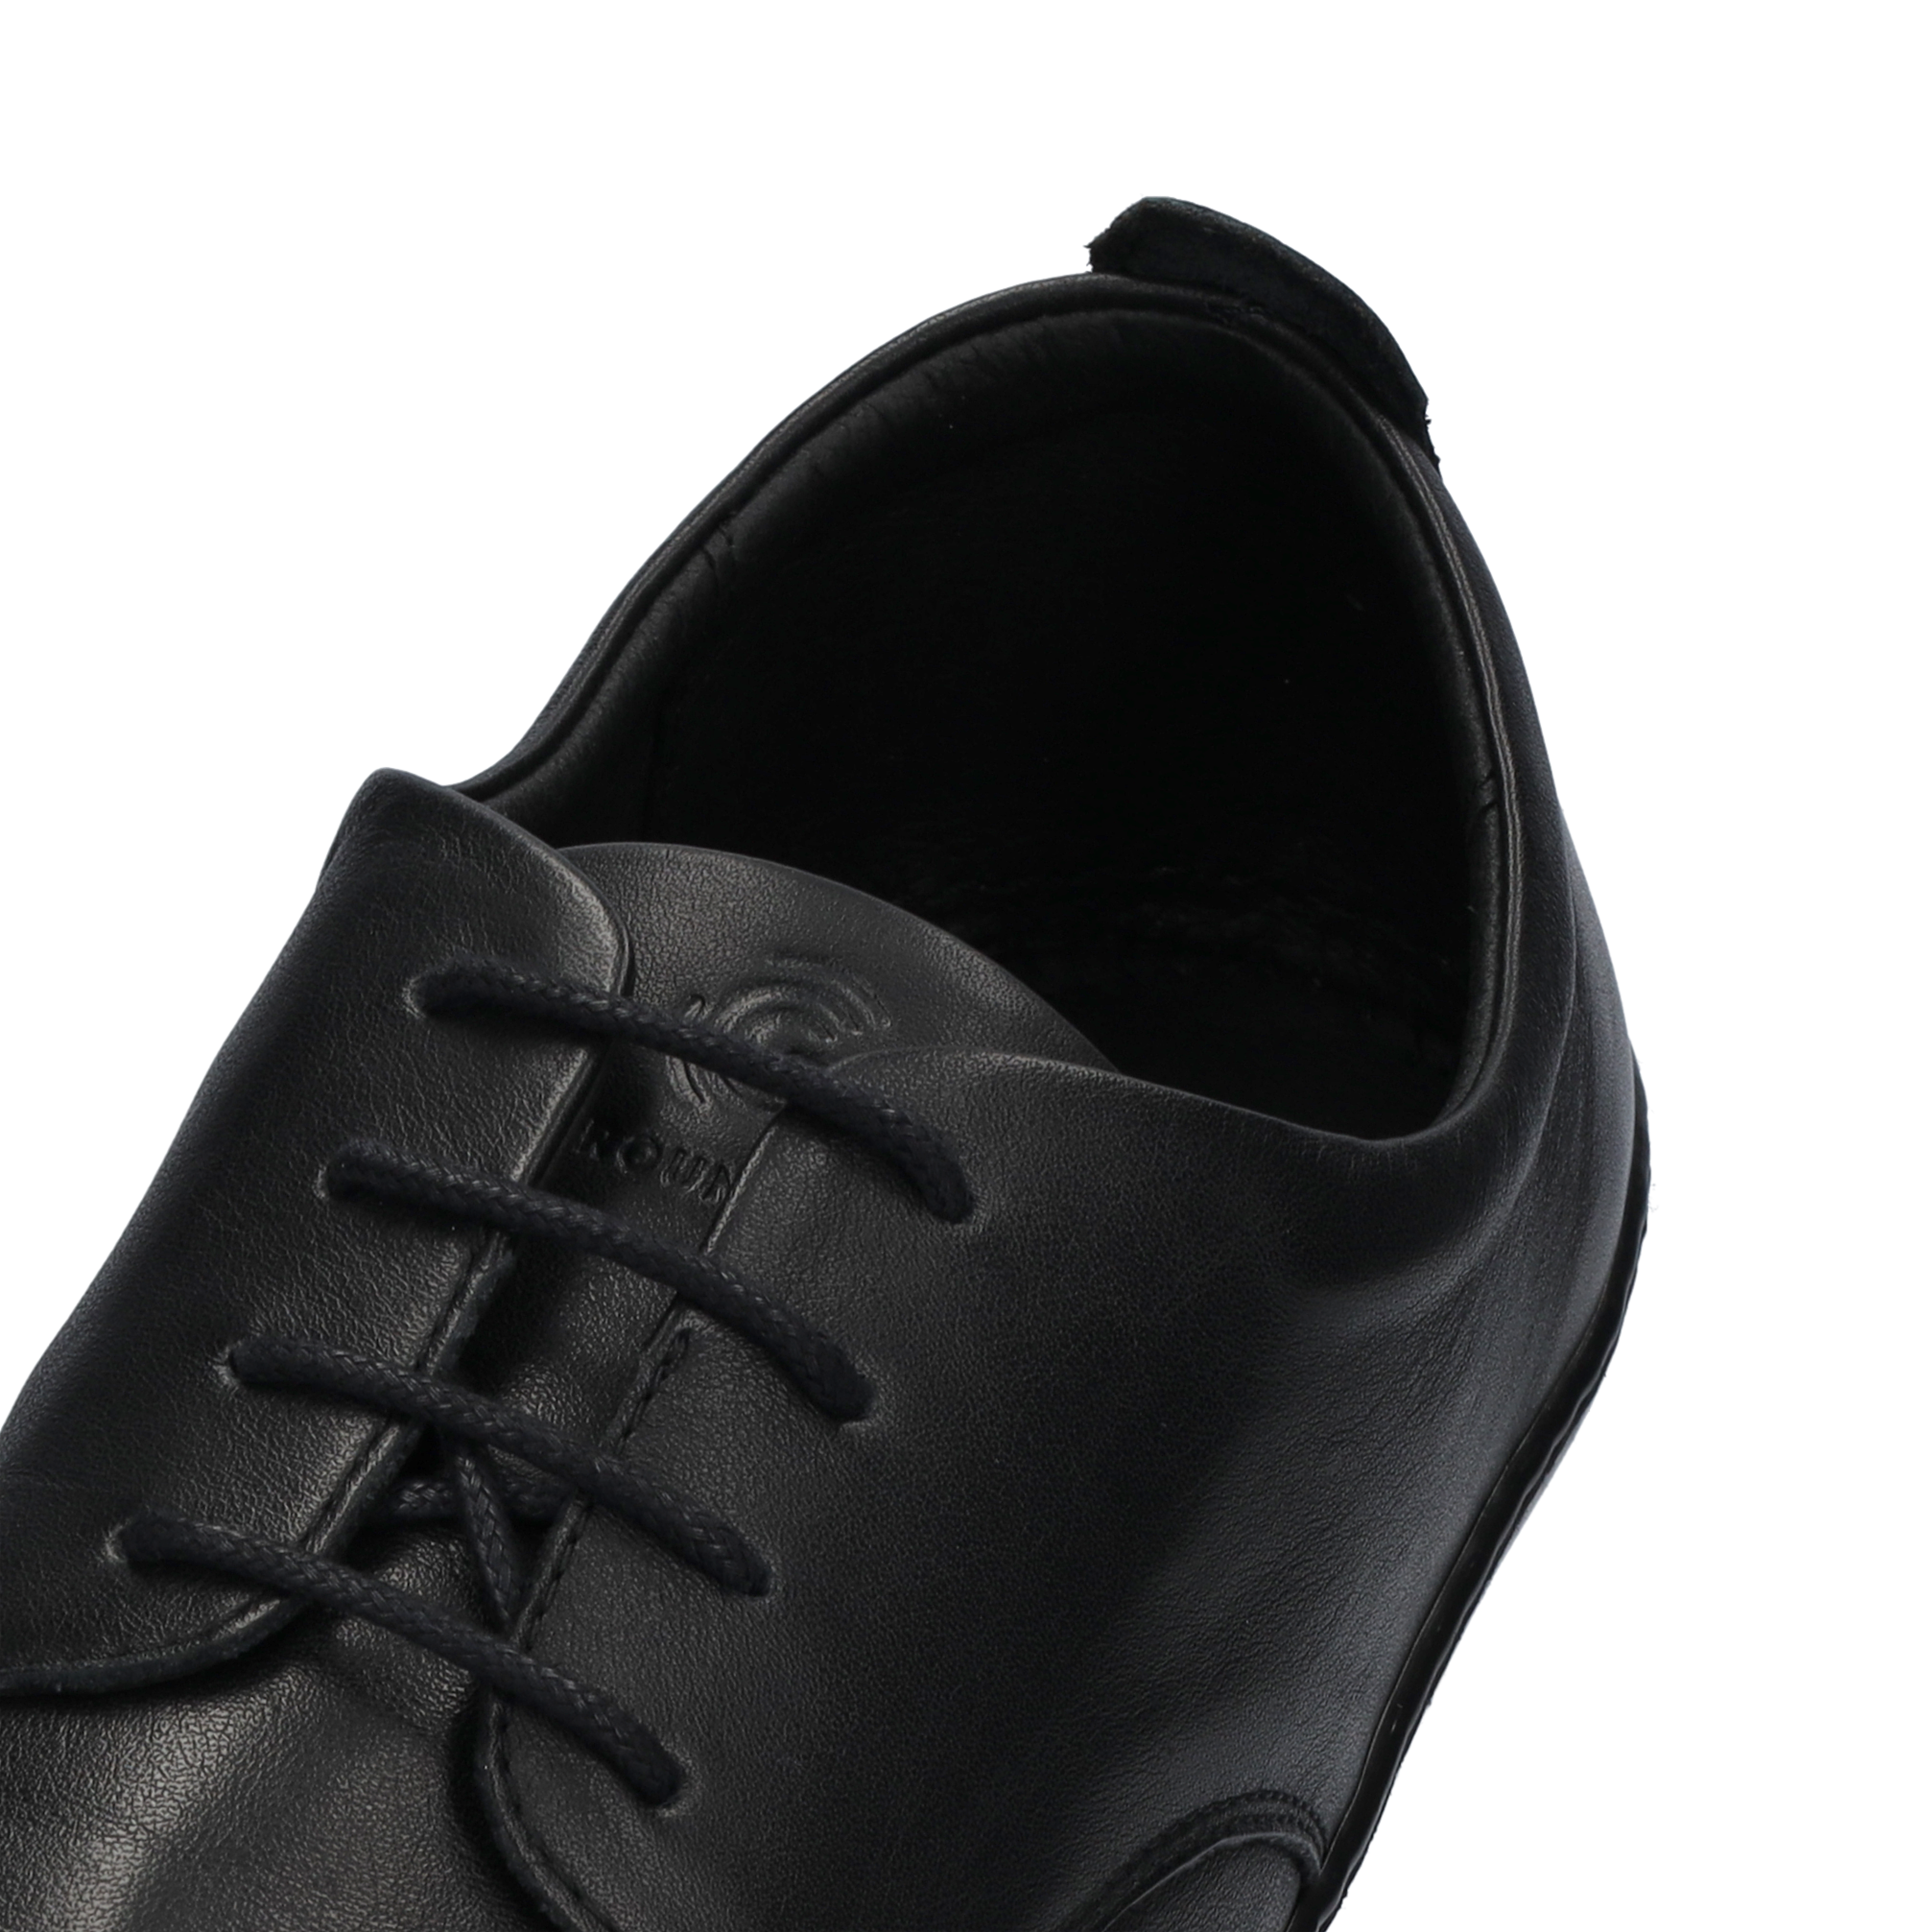 Groundies Palermo Men barfods klassisk oxford sko til mænd i farven black, detalje